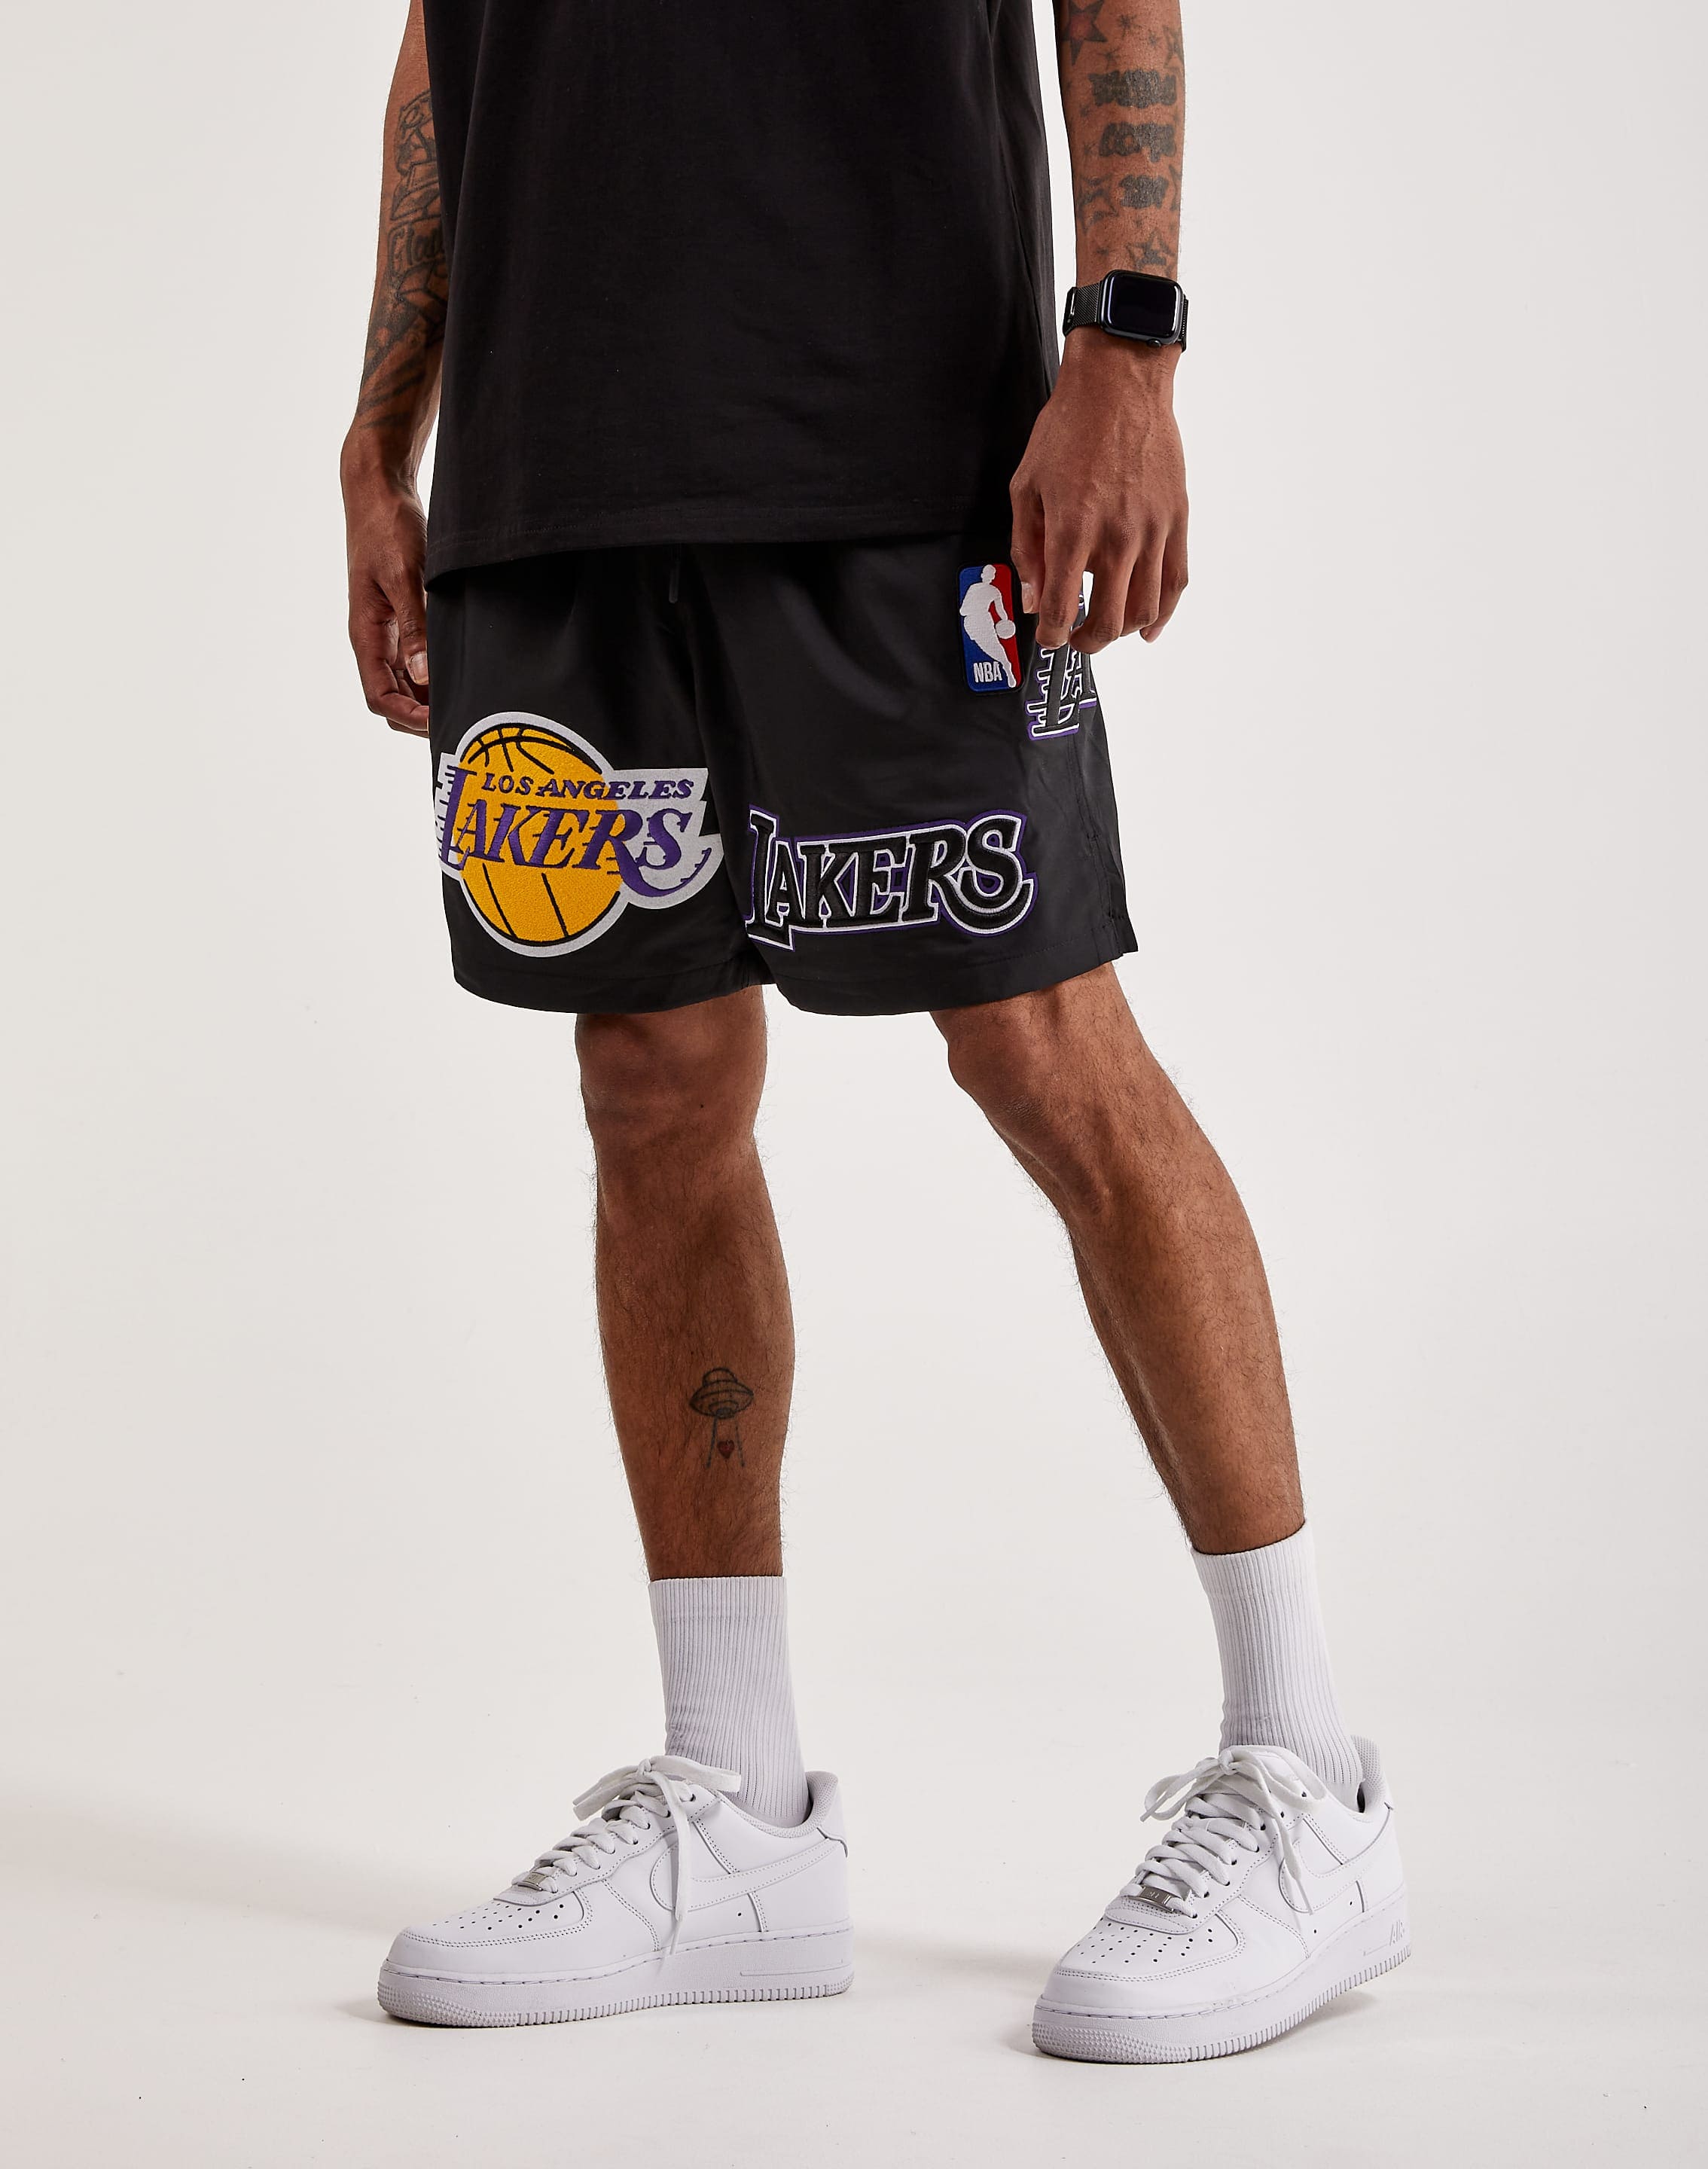 NBA Basketball Shorts - LA Lakers